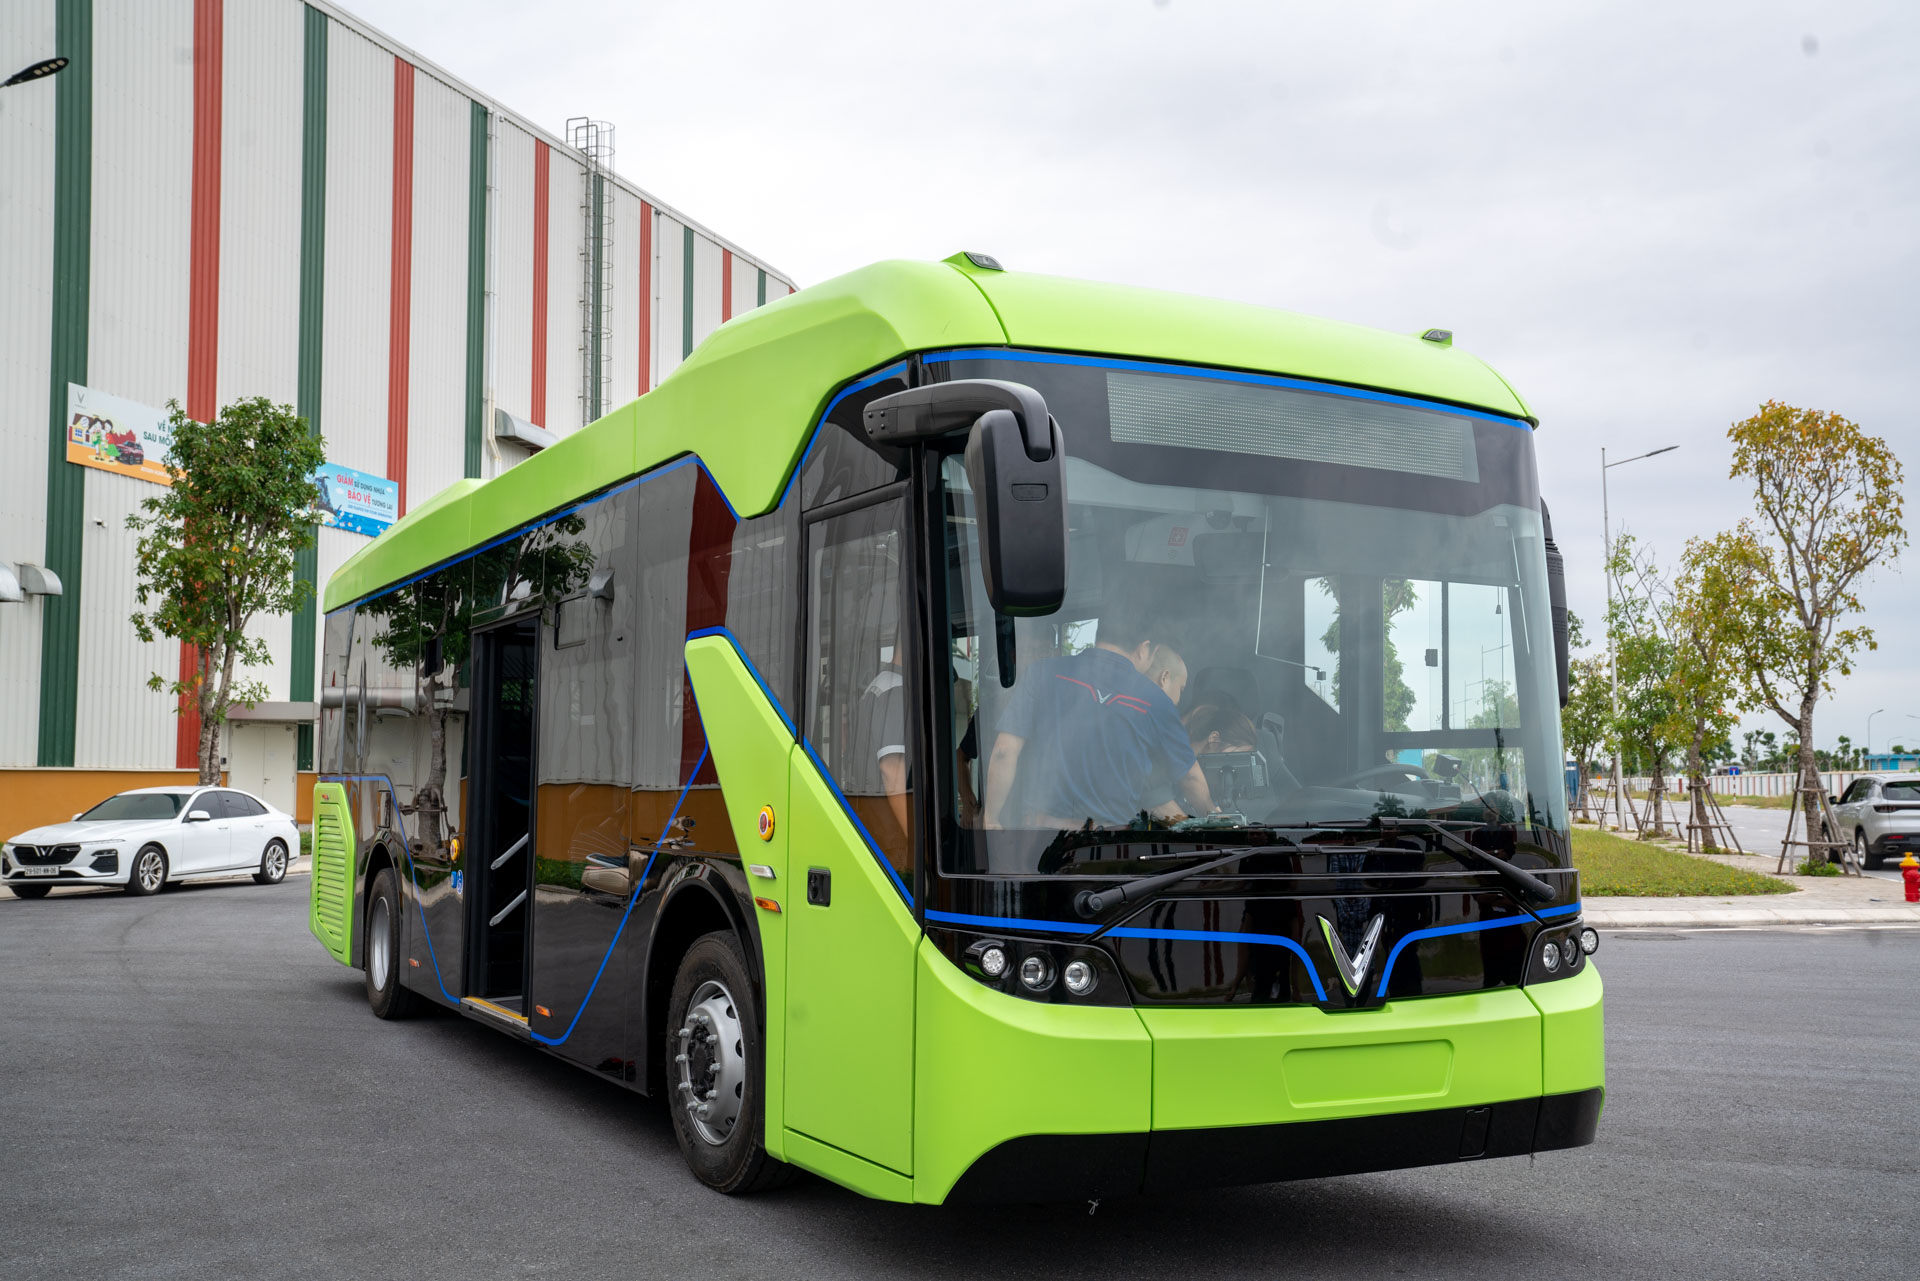 VinFast buýt điện: Bạn đã từng nghe về VinFast buýt điện - một giải pháp vận chuyển thân thiện với môi trường và hiện đại? Hãy xem ảnh và tìm hiểu thêm về loại xe buýt này, với thiết kế sang trọng, nhiều tính năng an toàn và tiện ích, đem lại sự thoải mái và thư giãn cho hành khách trên mỗi chuyến đi.